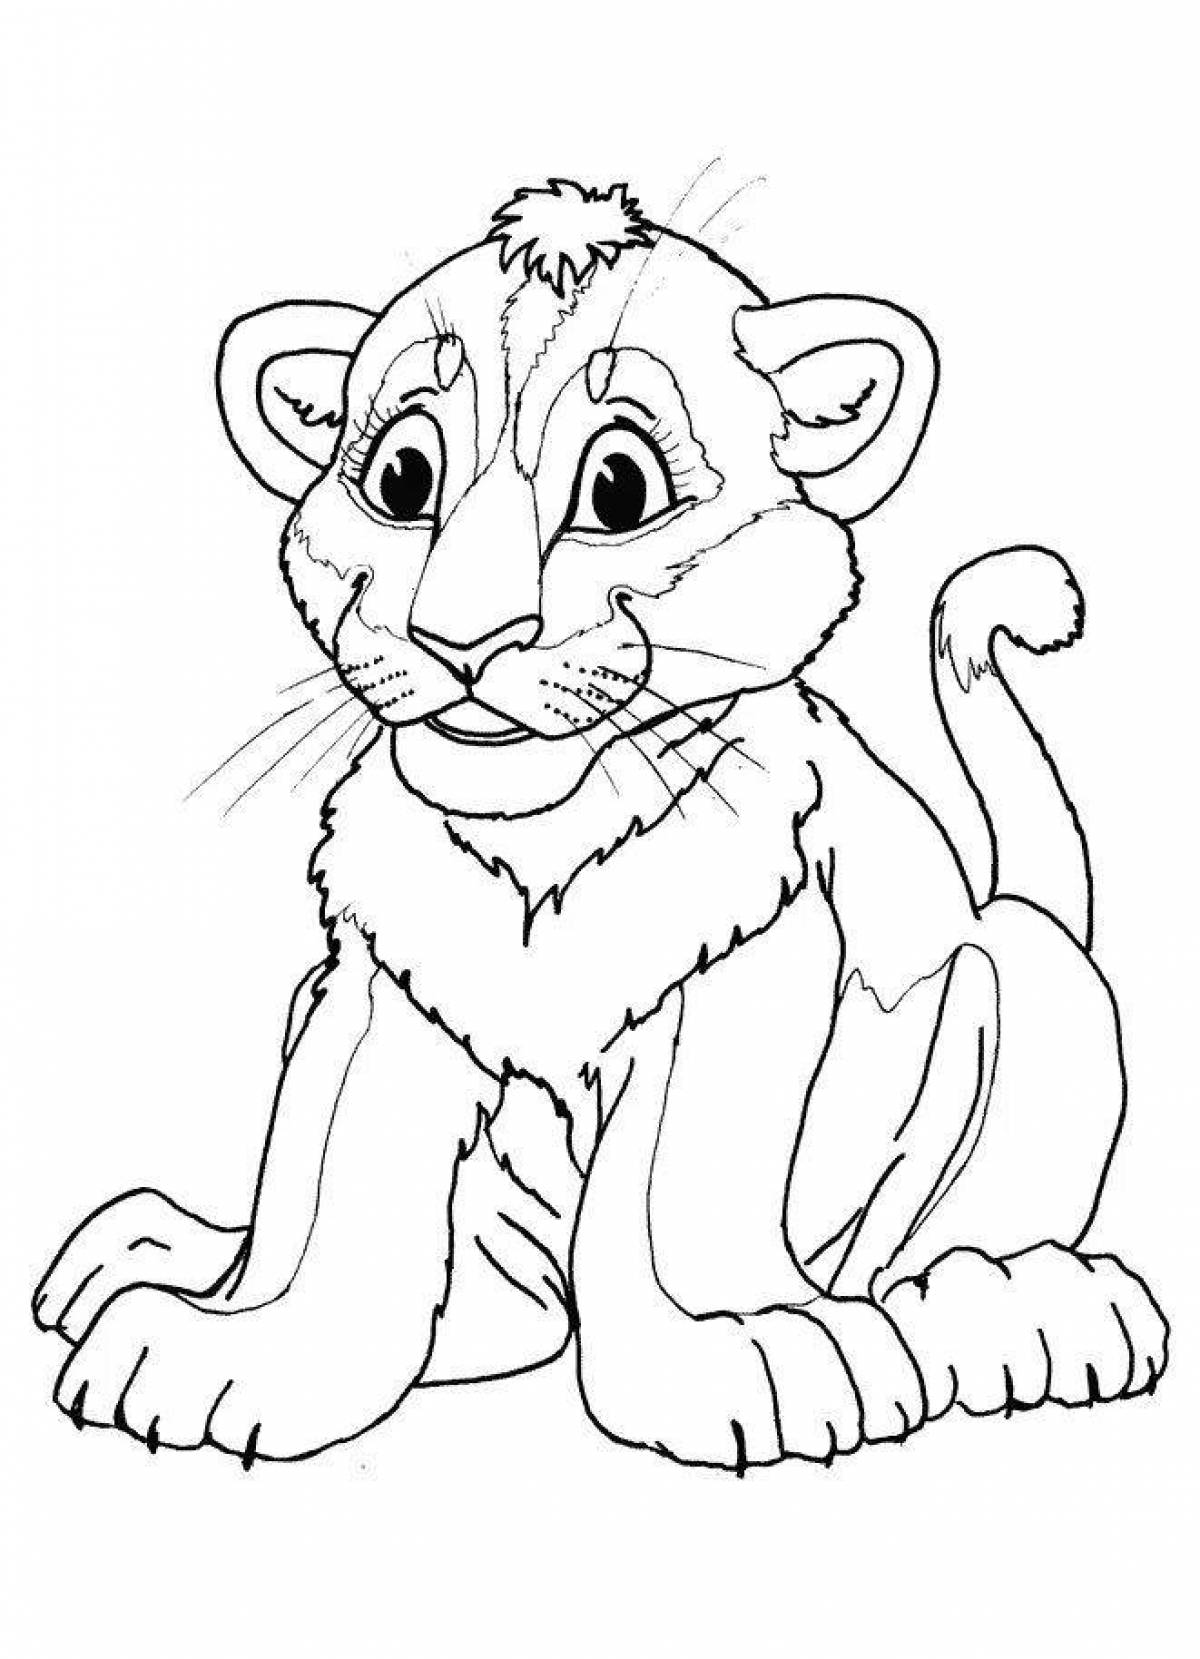 Colorful lion cub coloring page